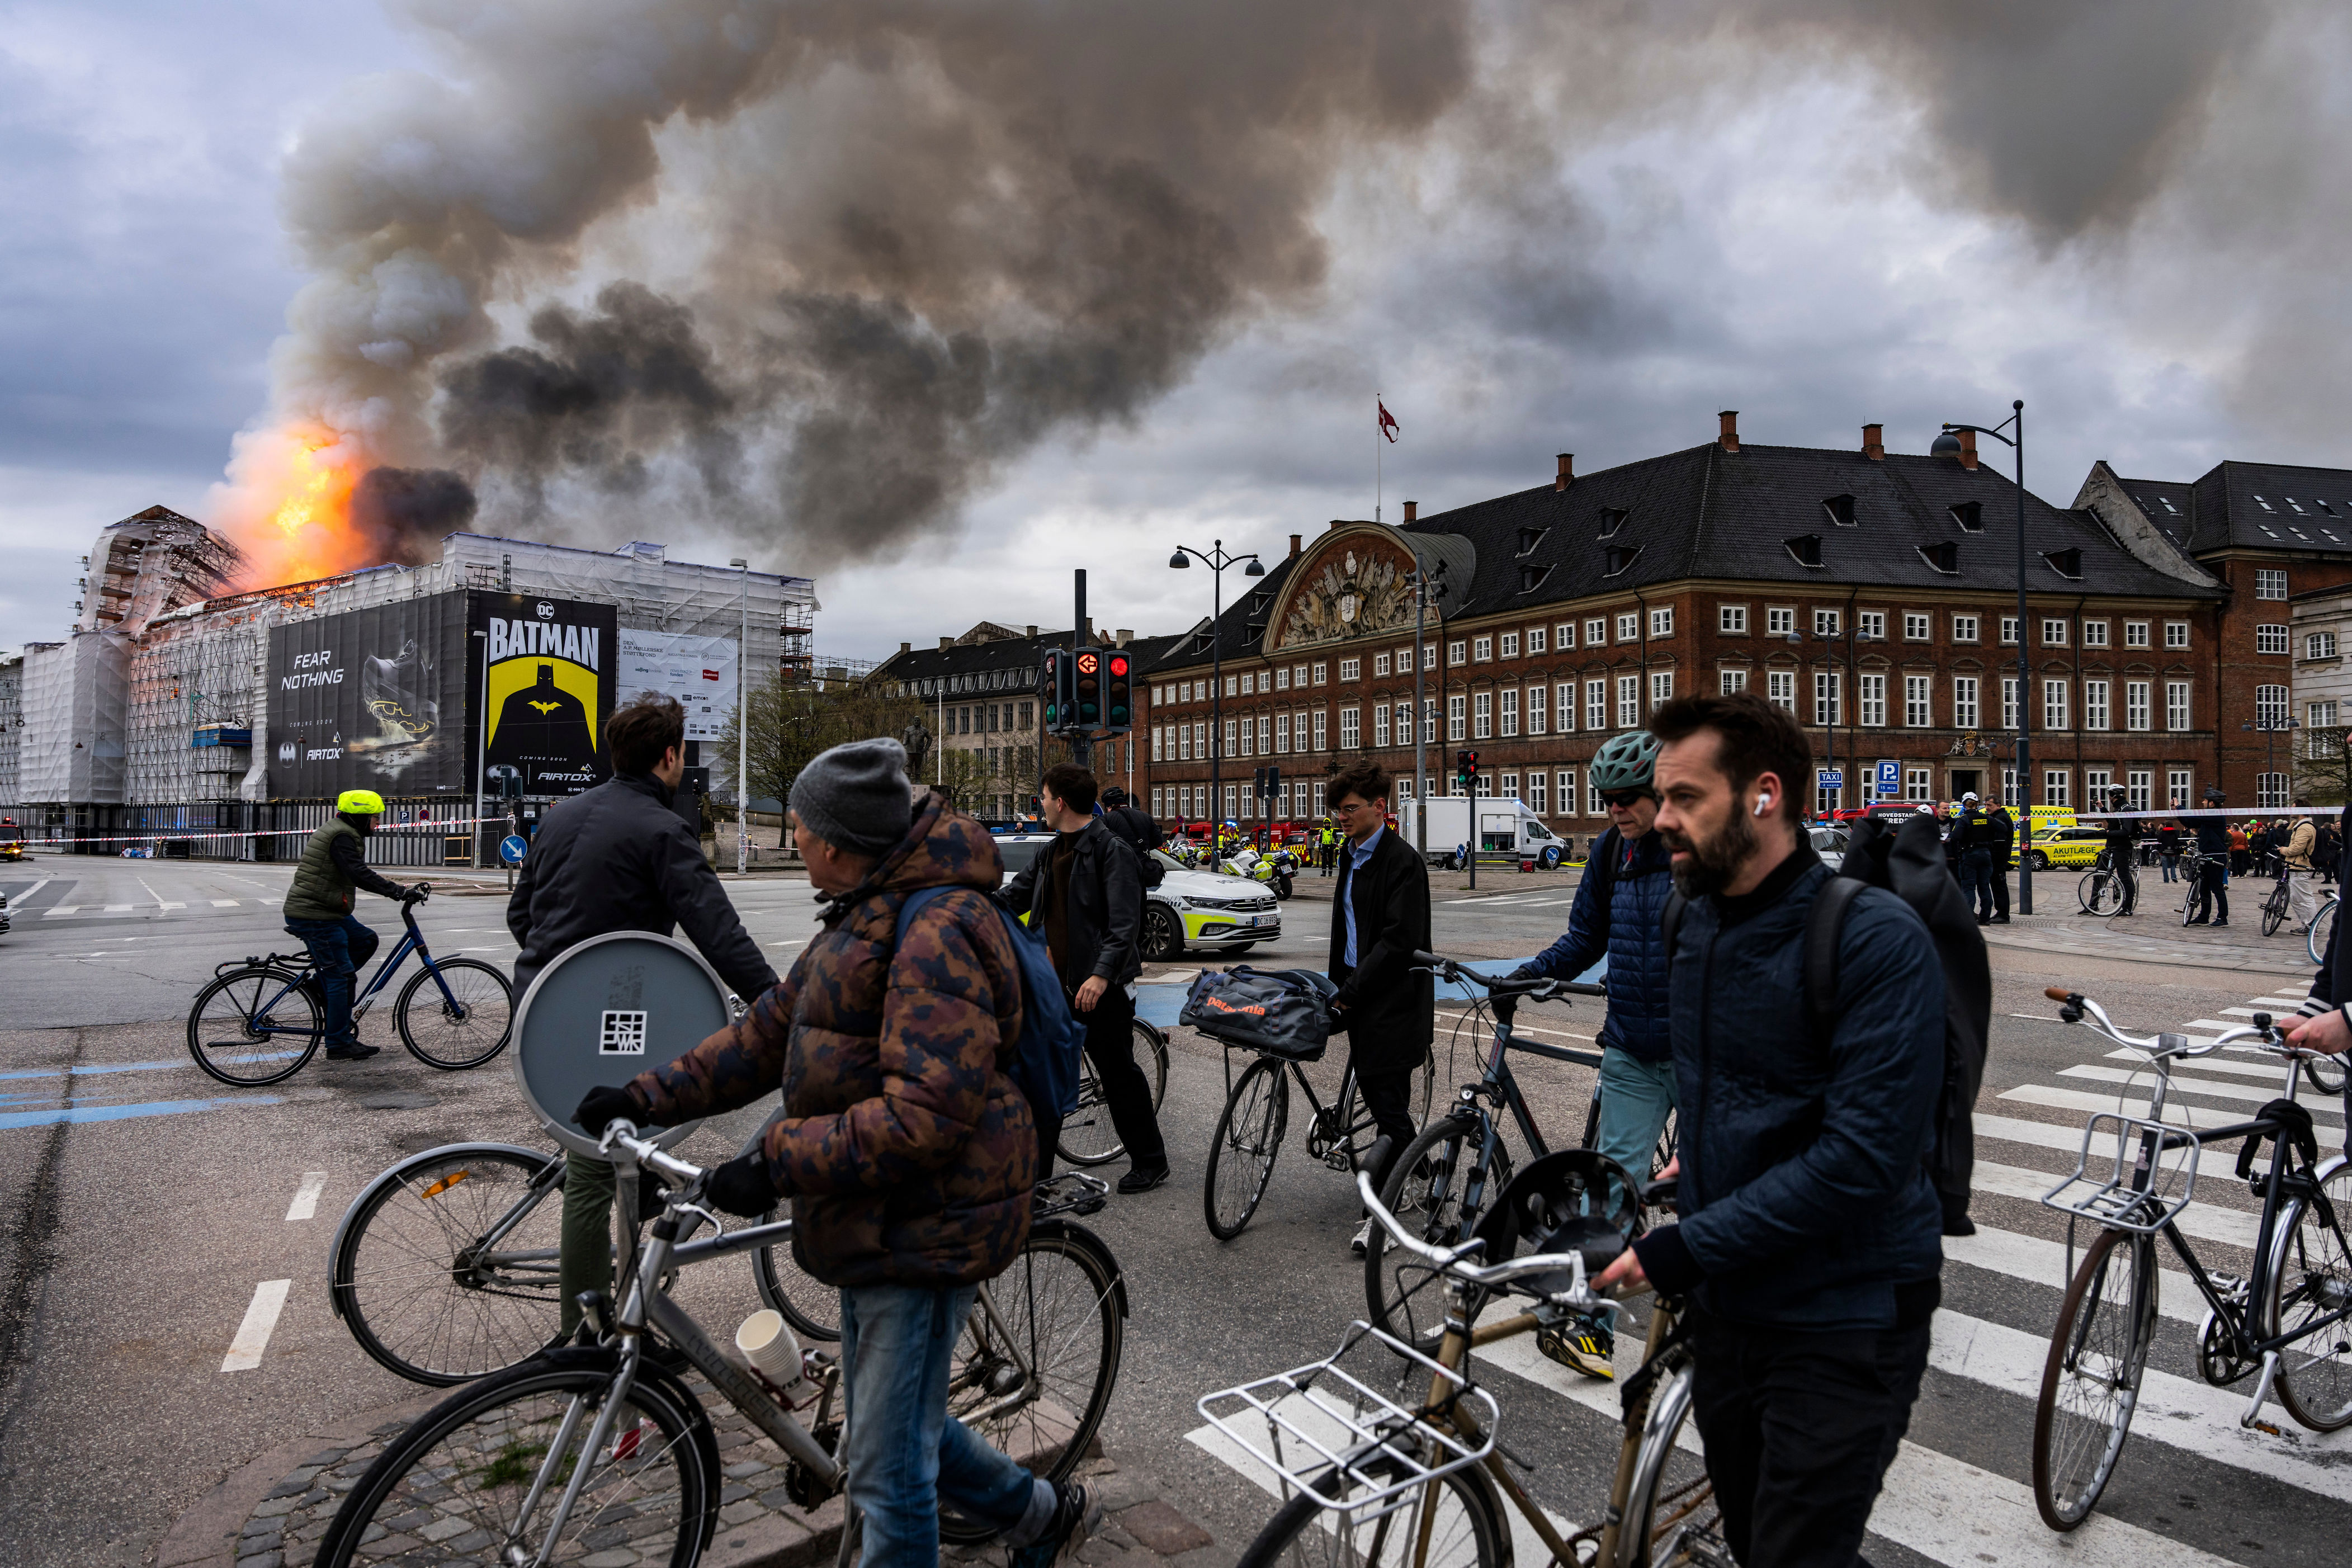 copenhagen fire: spire of historic stock exchange collapses in inferno